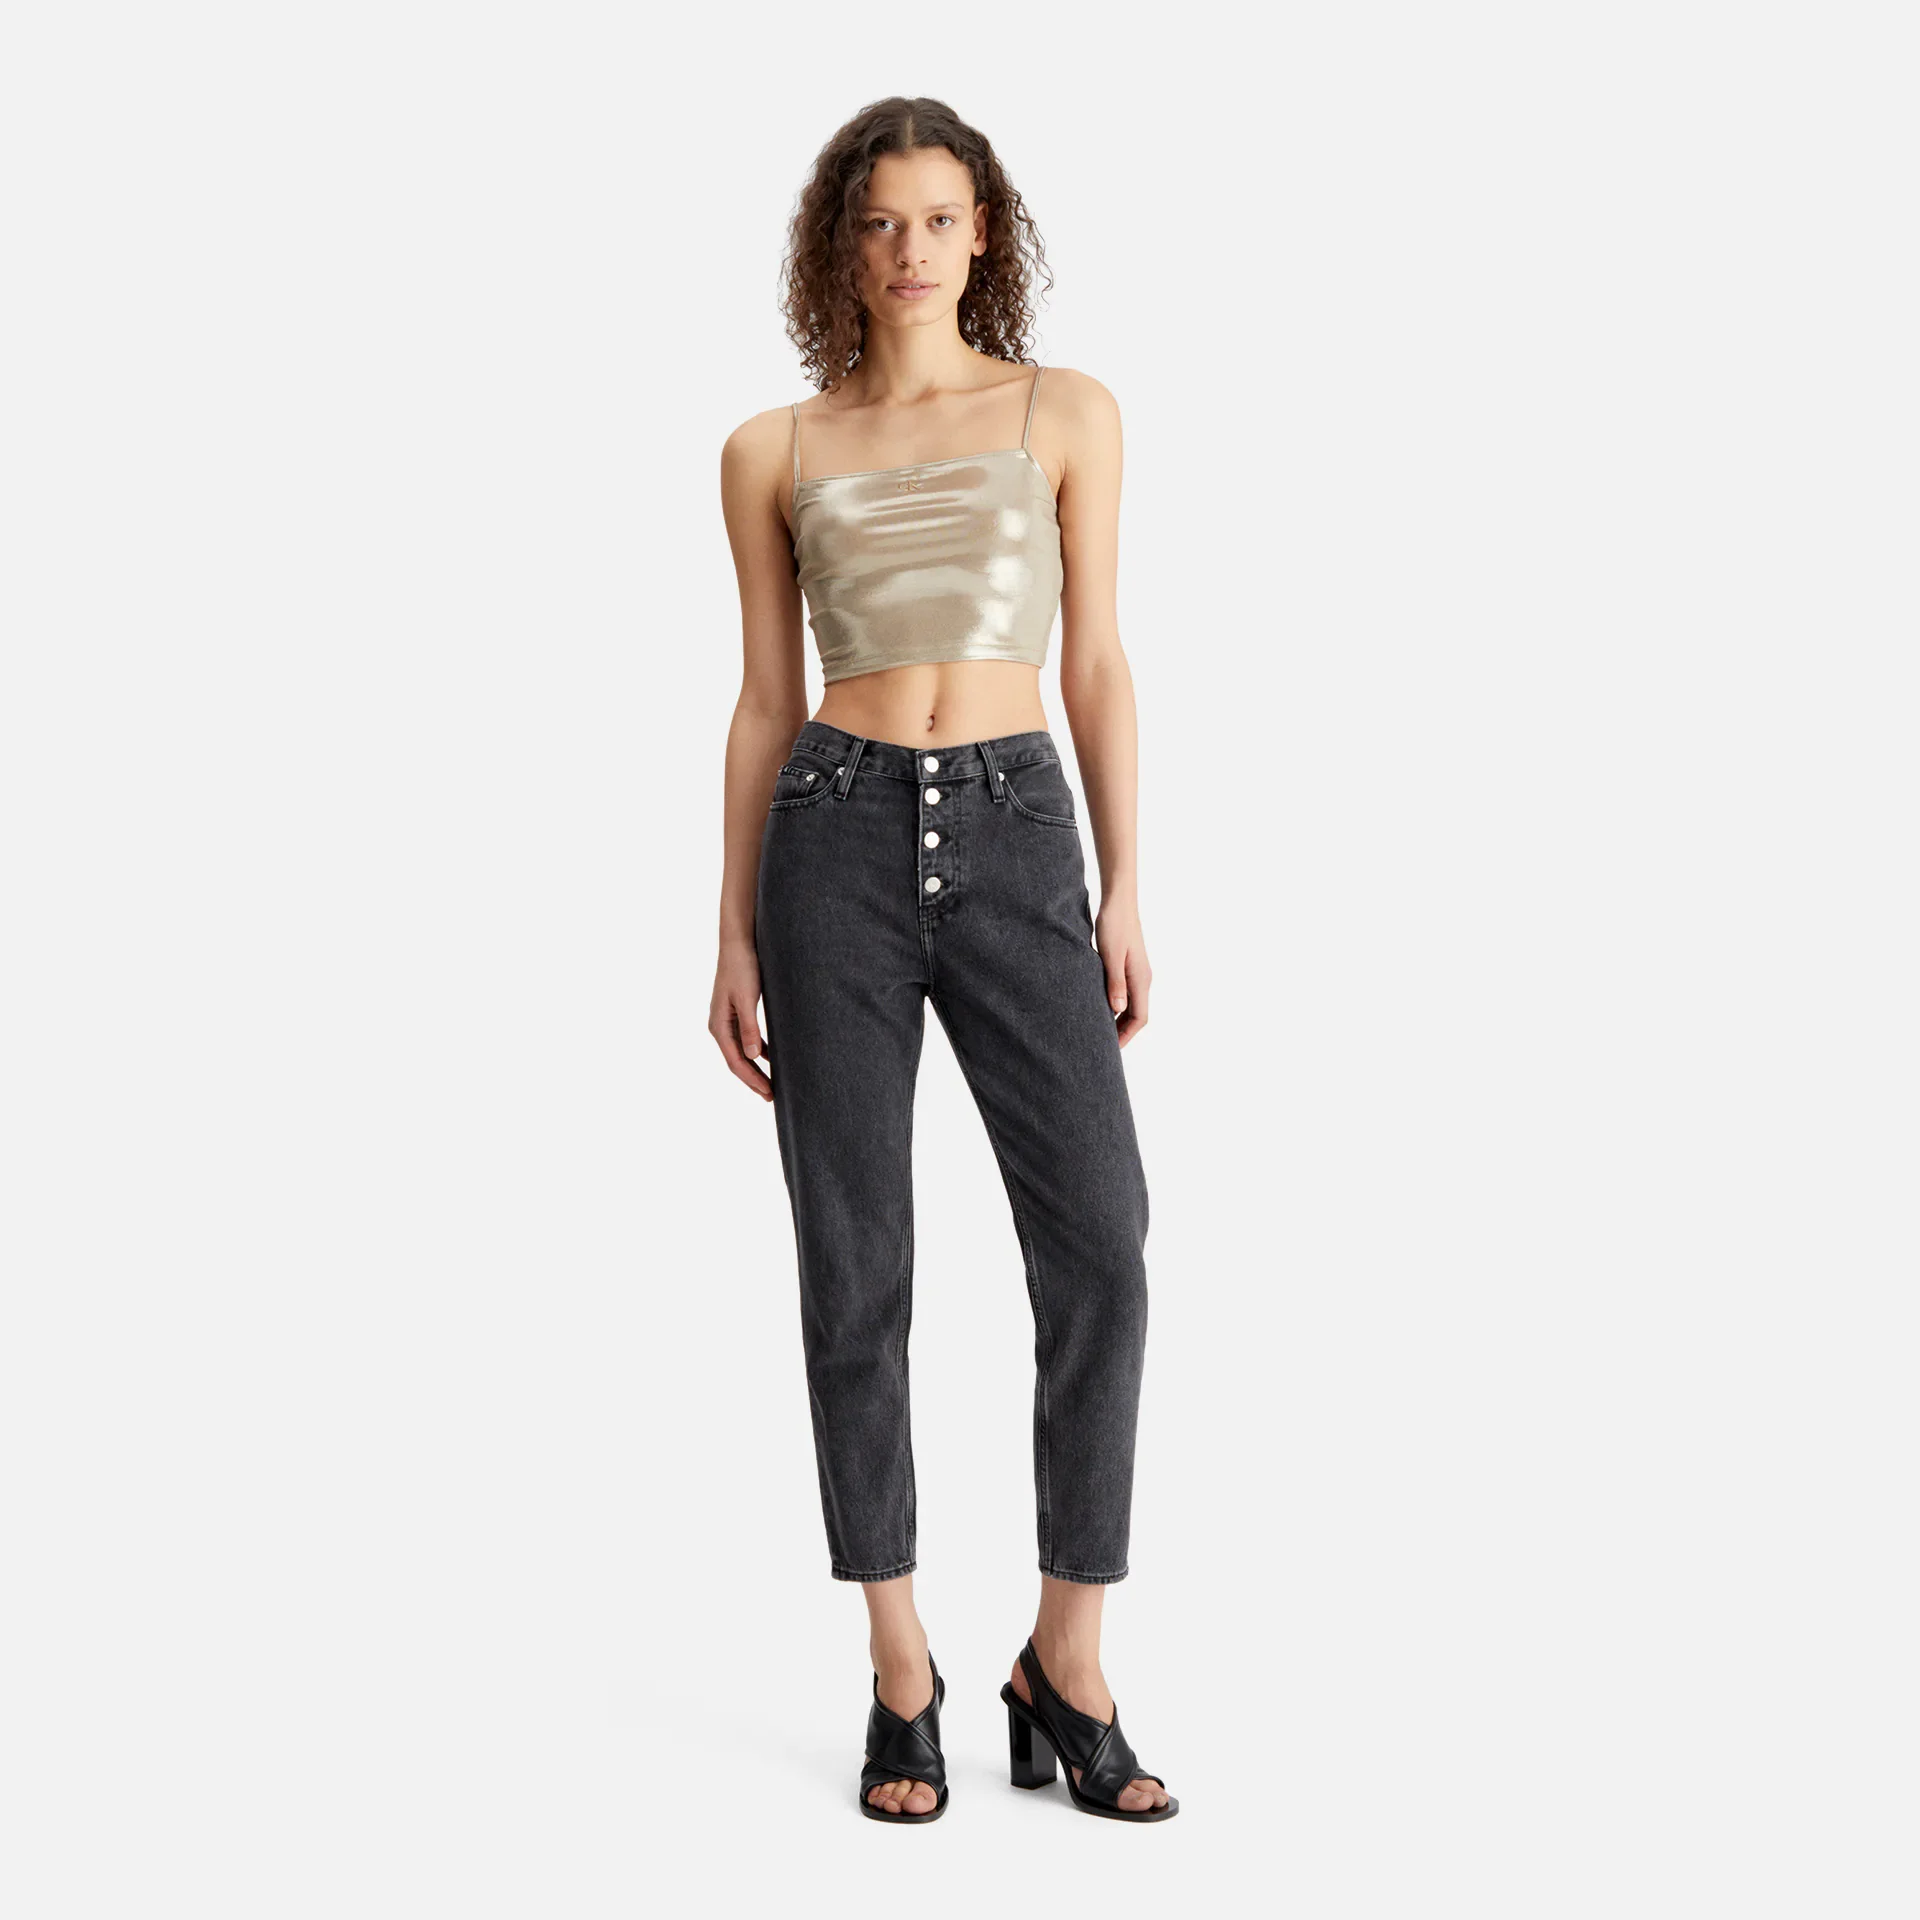 Calvin Klein Jeans Metallic Strappy Top Beige